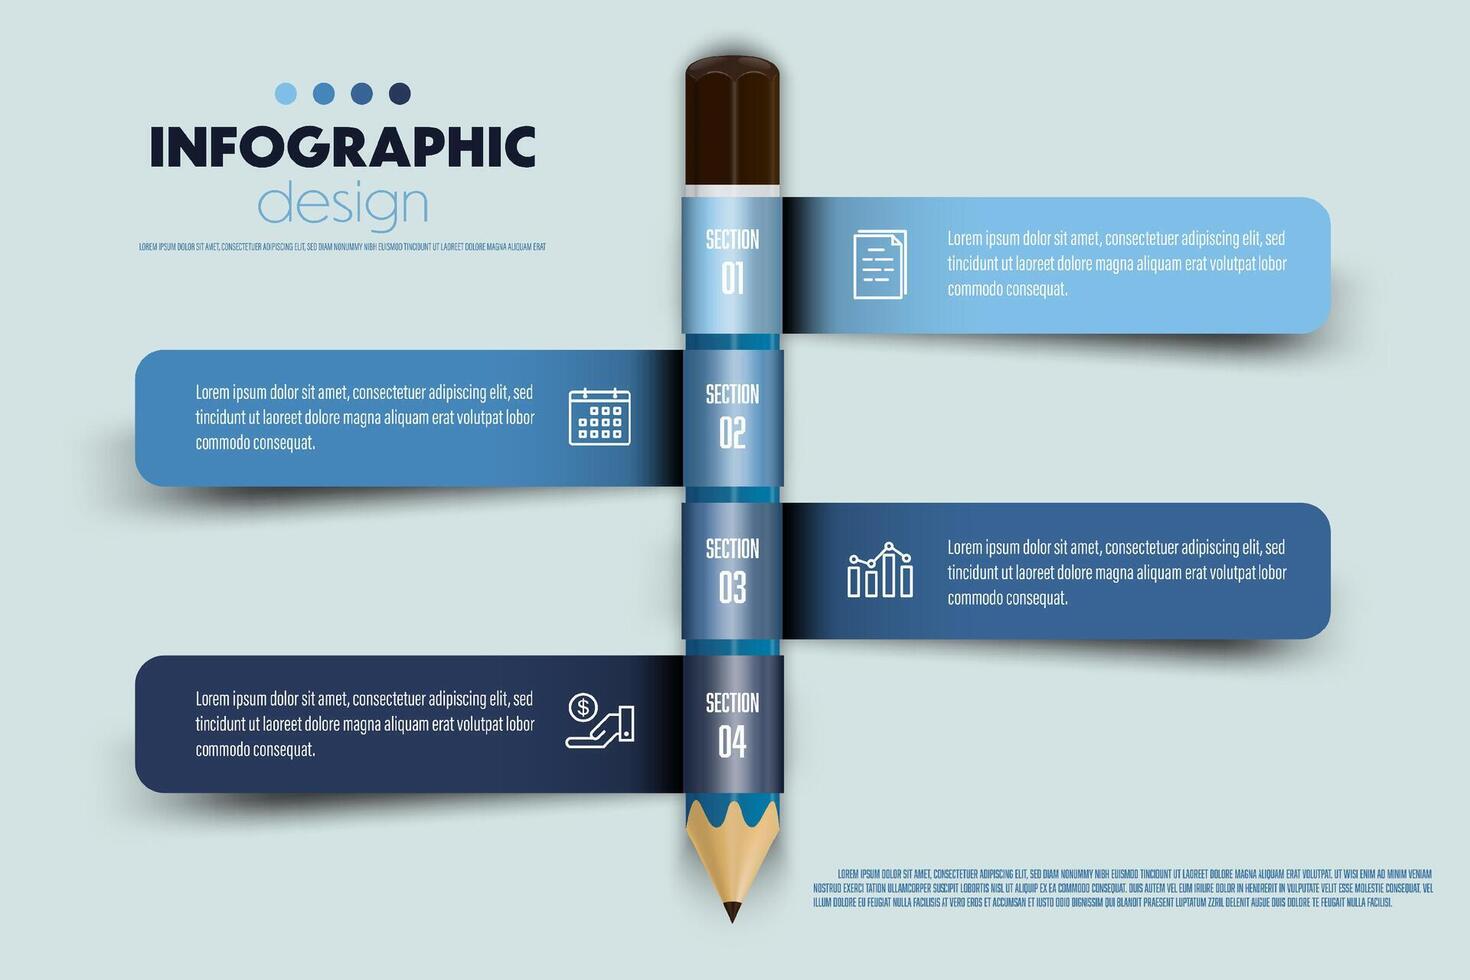 vector infographic ontwerp lint verpakt in de omgeving van potlood inclusief grafieken, pictogrammen, en bedrijf concept grafieken met 4 opties.